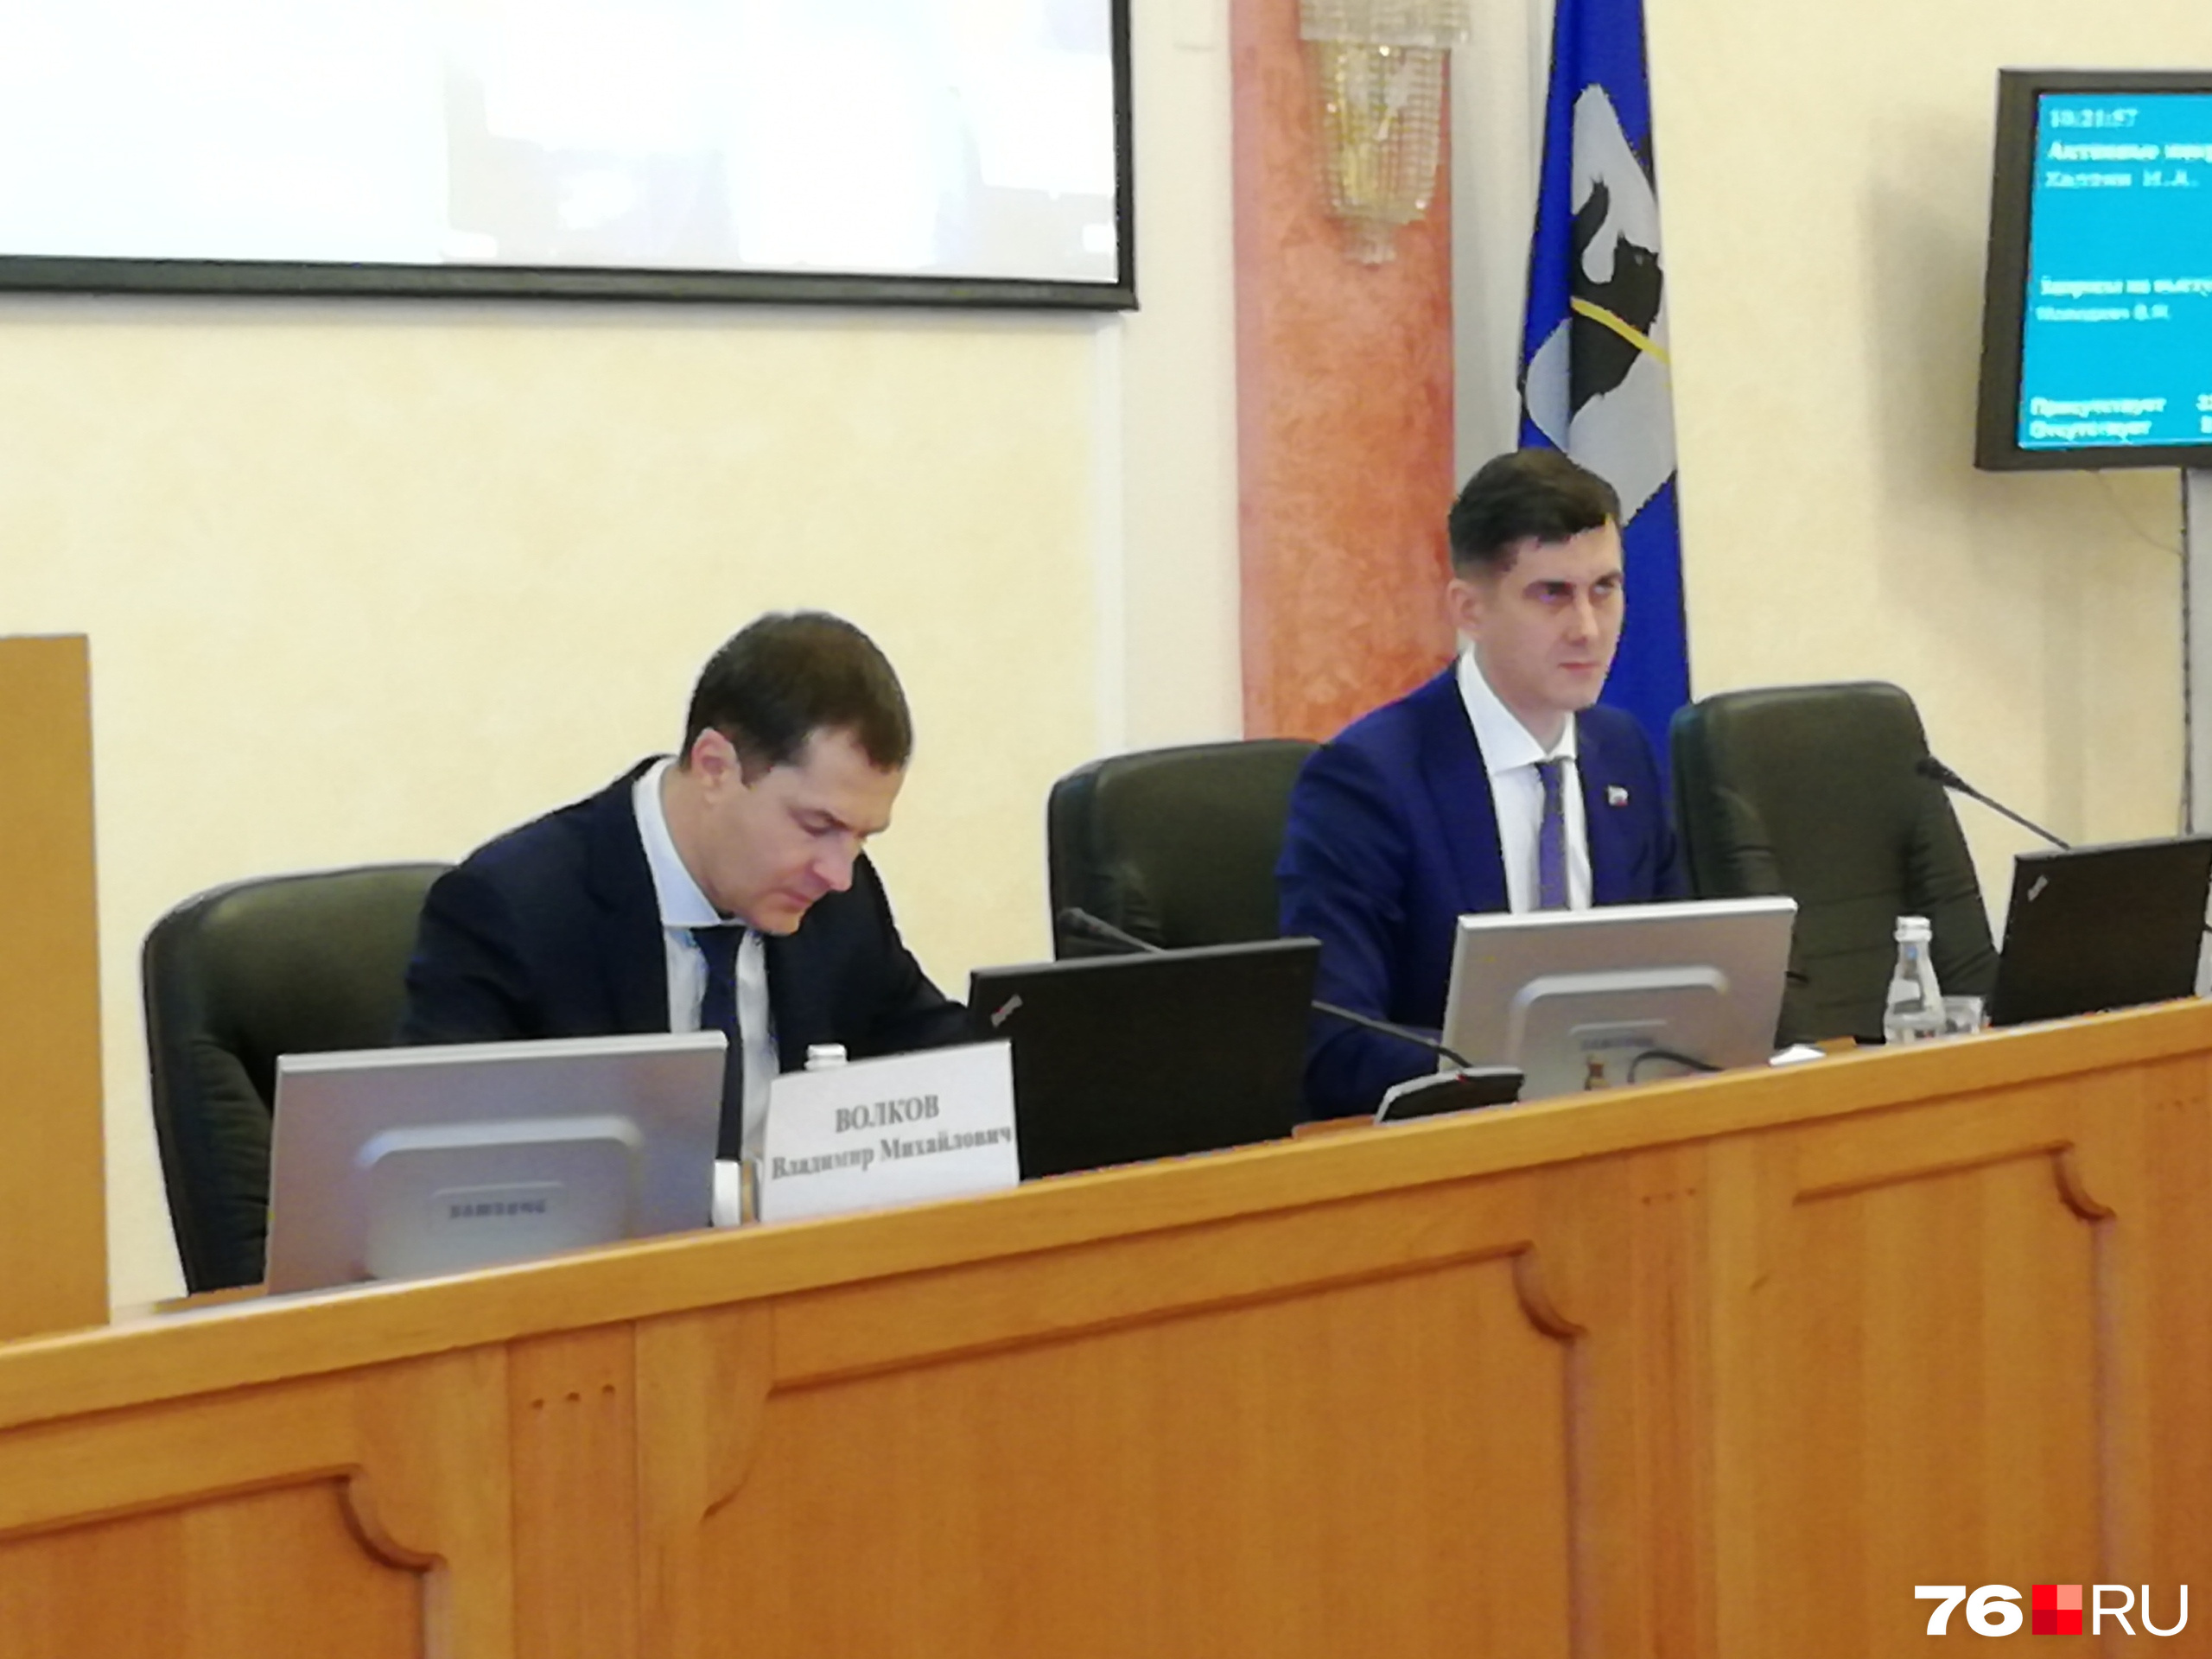 Мэр Владимир Волков (слева) не стал принимать от депутата вызов на рэп-баттл